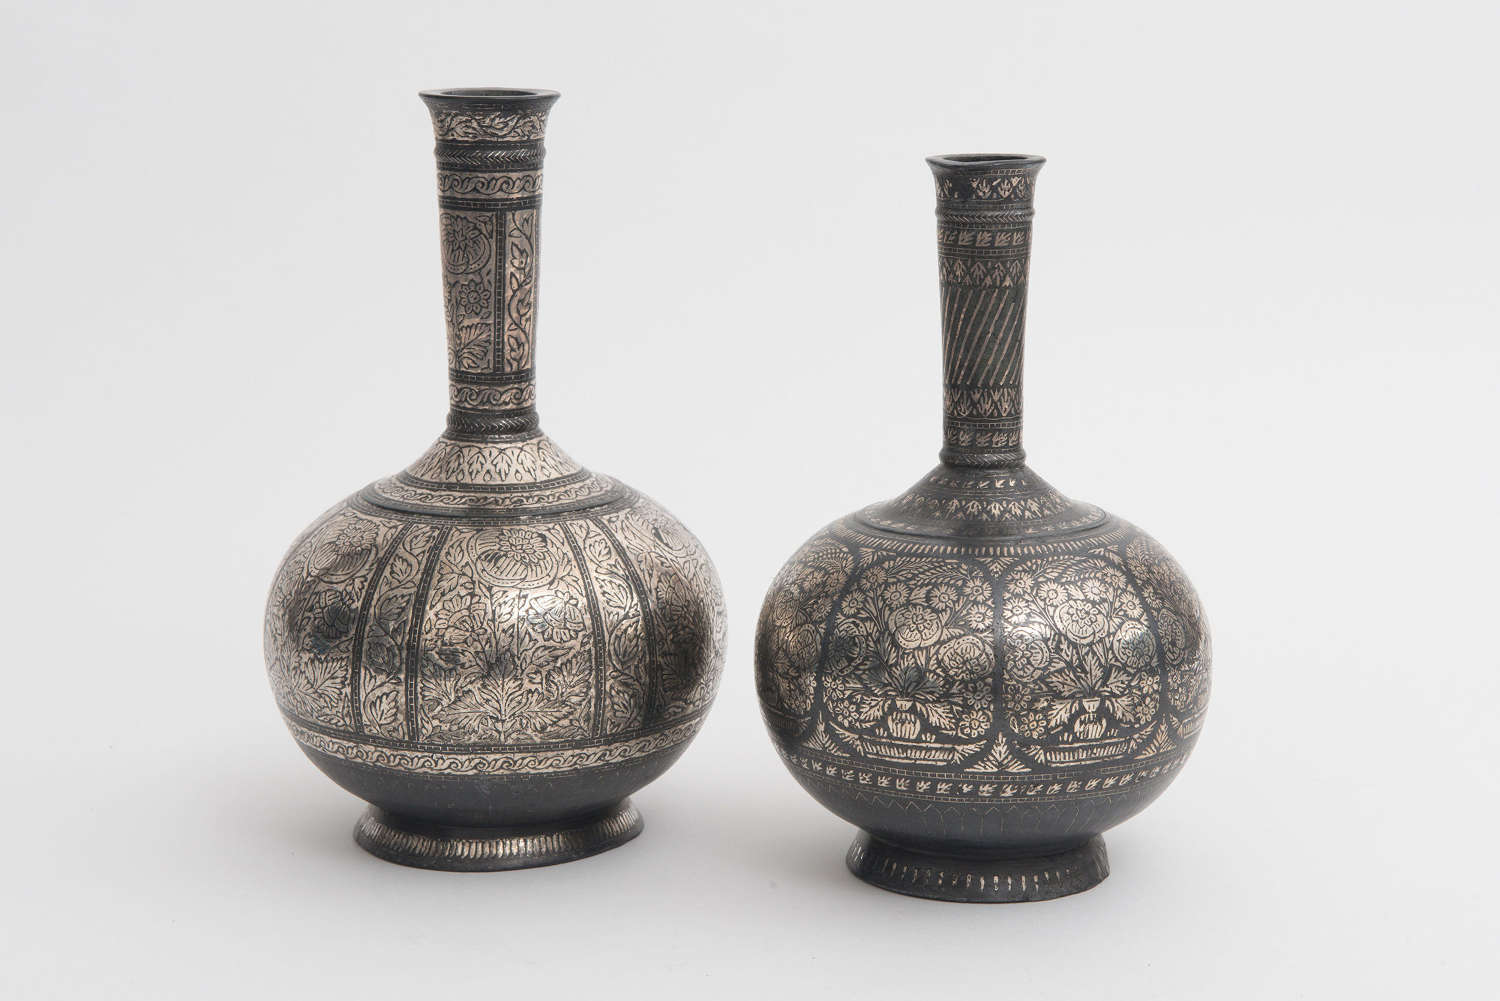 Indian Silver Bidri Ware Bottles, Bidar 19th century